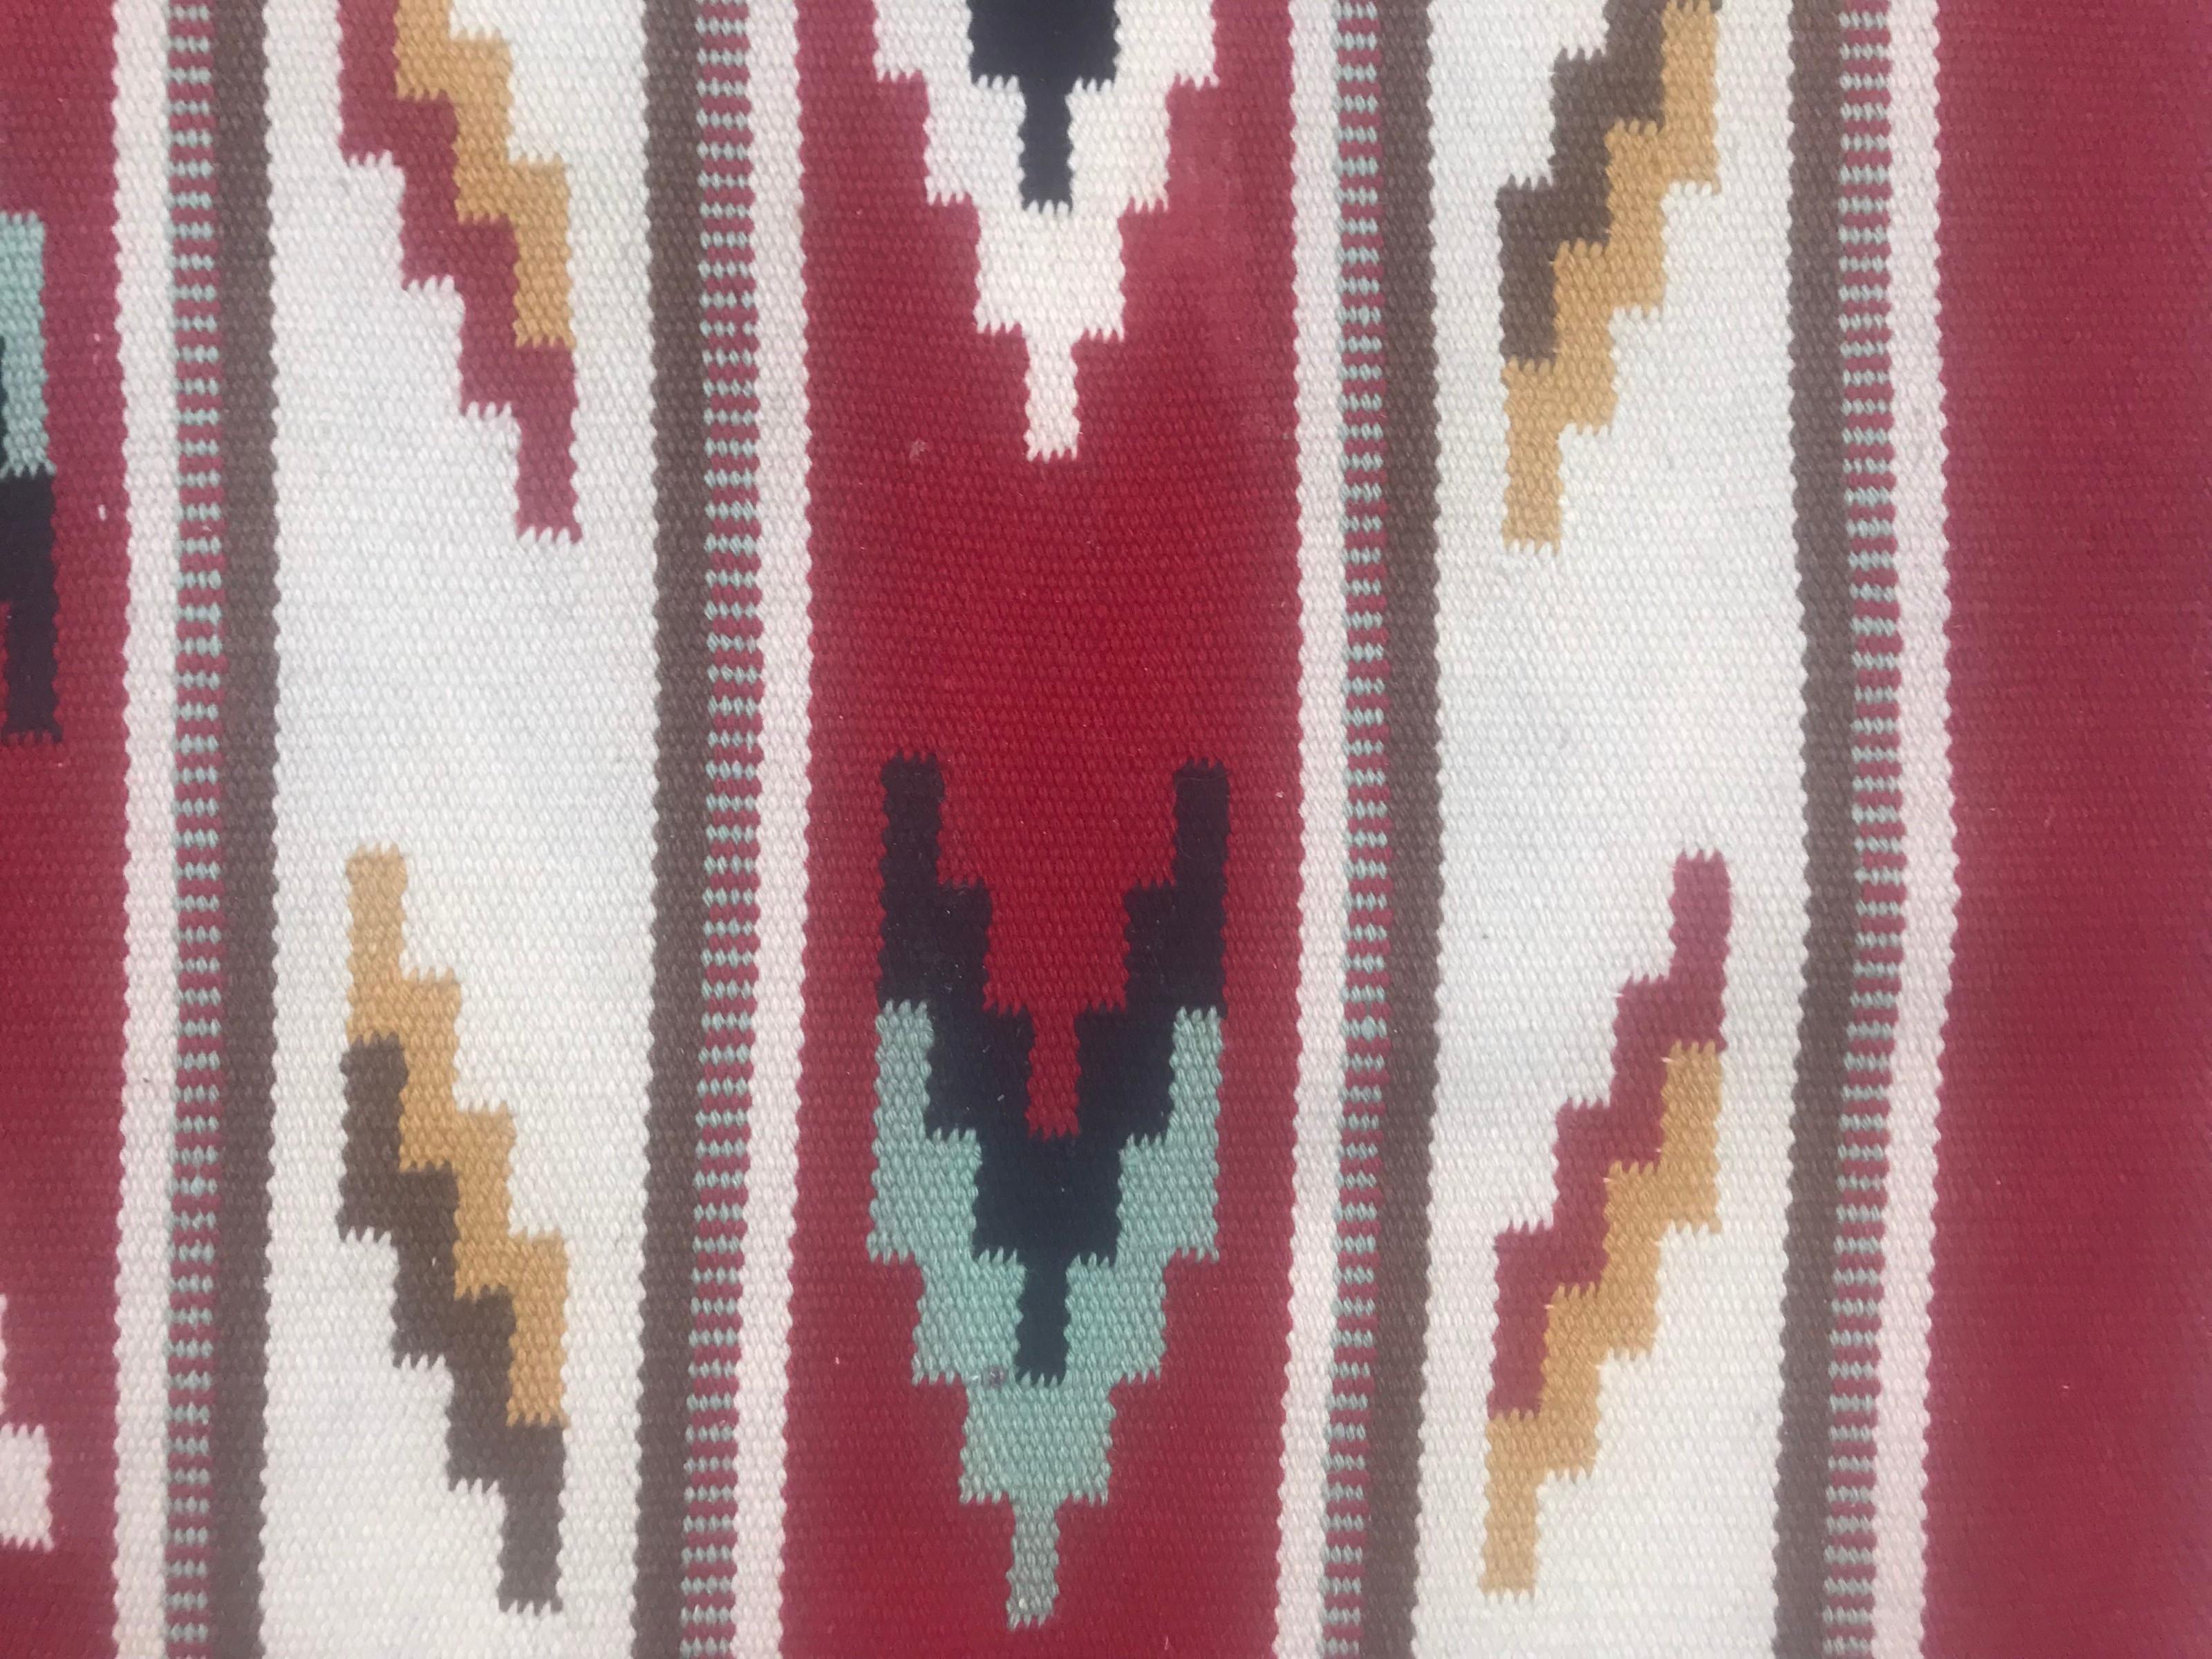 Atemberaubender flachgewebter skandinavischer Teppich aus dem 20. Jahrhundert mit einem fesselnden geometrischen Muster und leuchtenden Farben wie Rot, Blau, Orange, Grau und Schwarz. Sorgfältig handgewebt mit Wolle auf einem Baumwollgrund. Ein